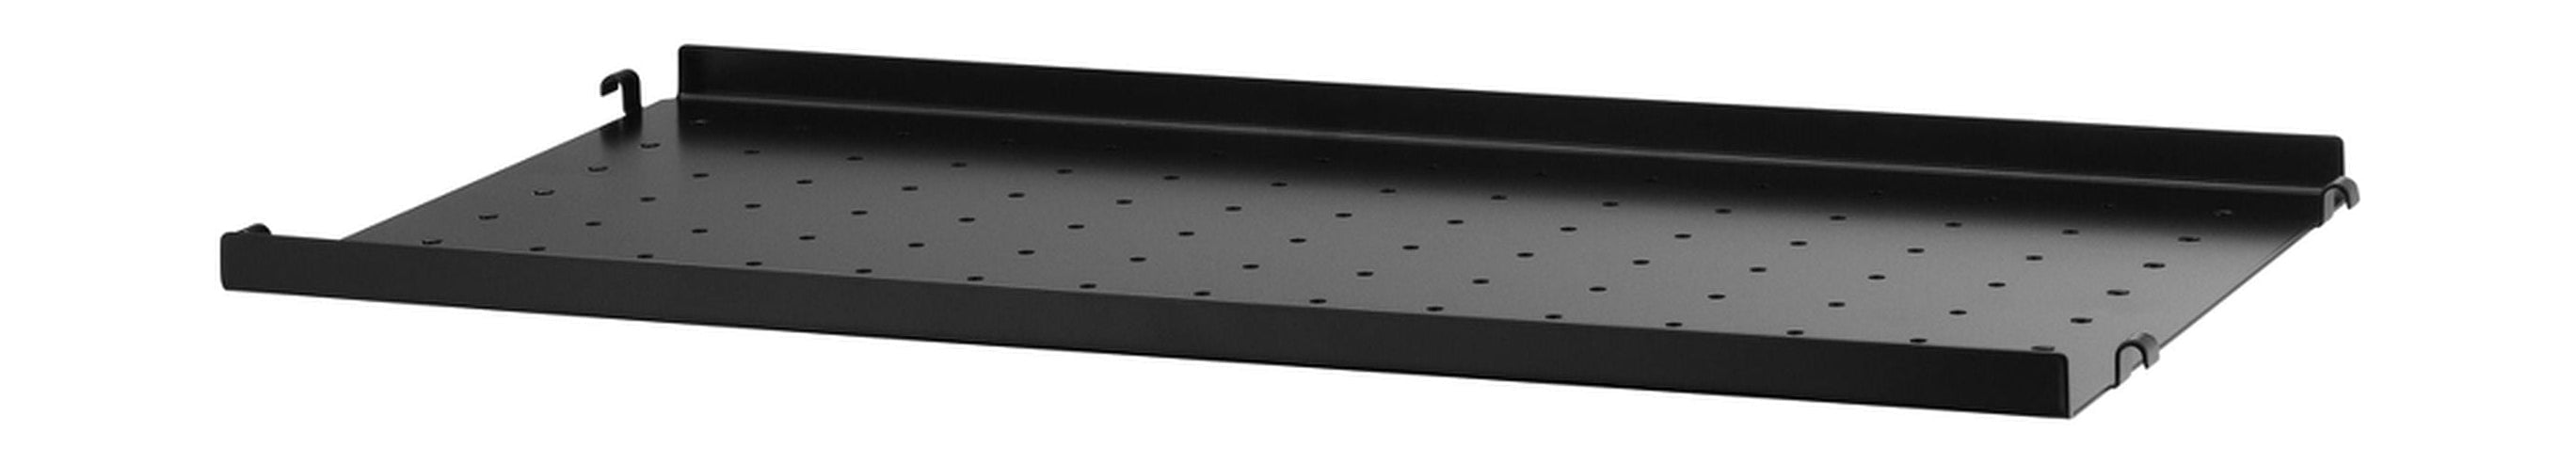 Sistema de muebles de cadena Estante de metal con borde bajo 30x58 cm, negro